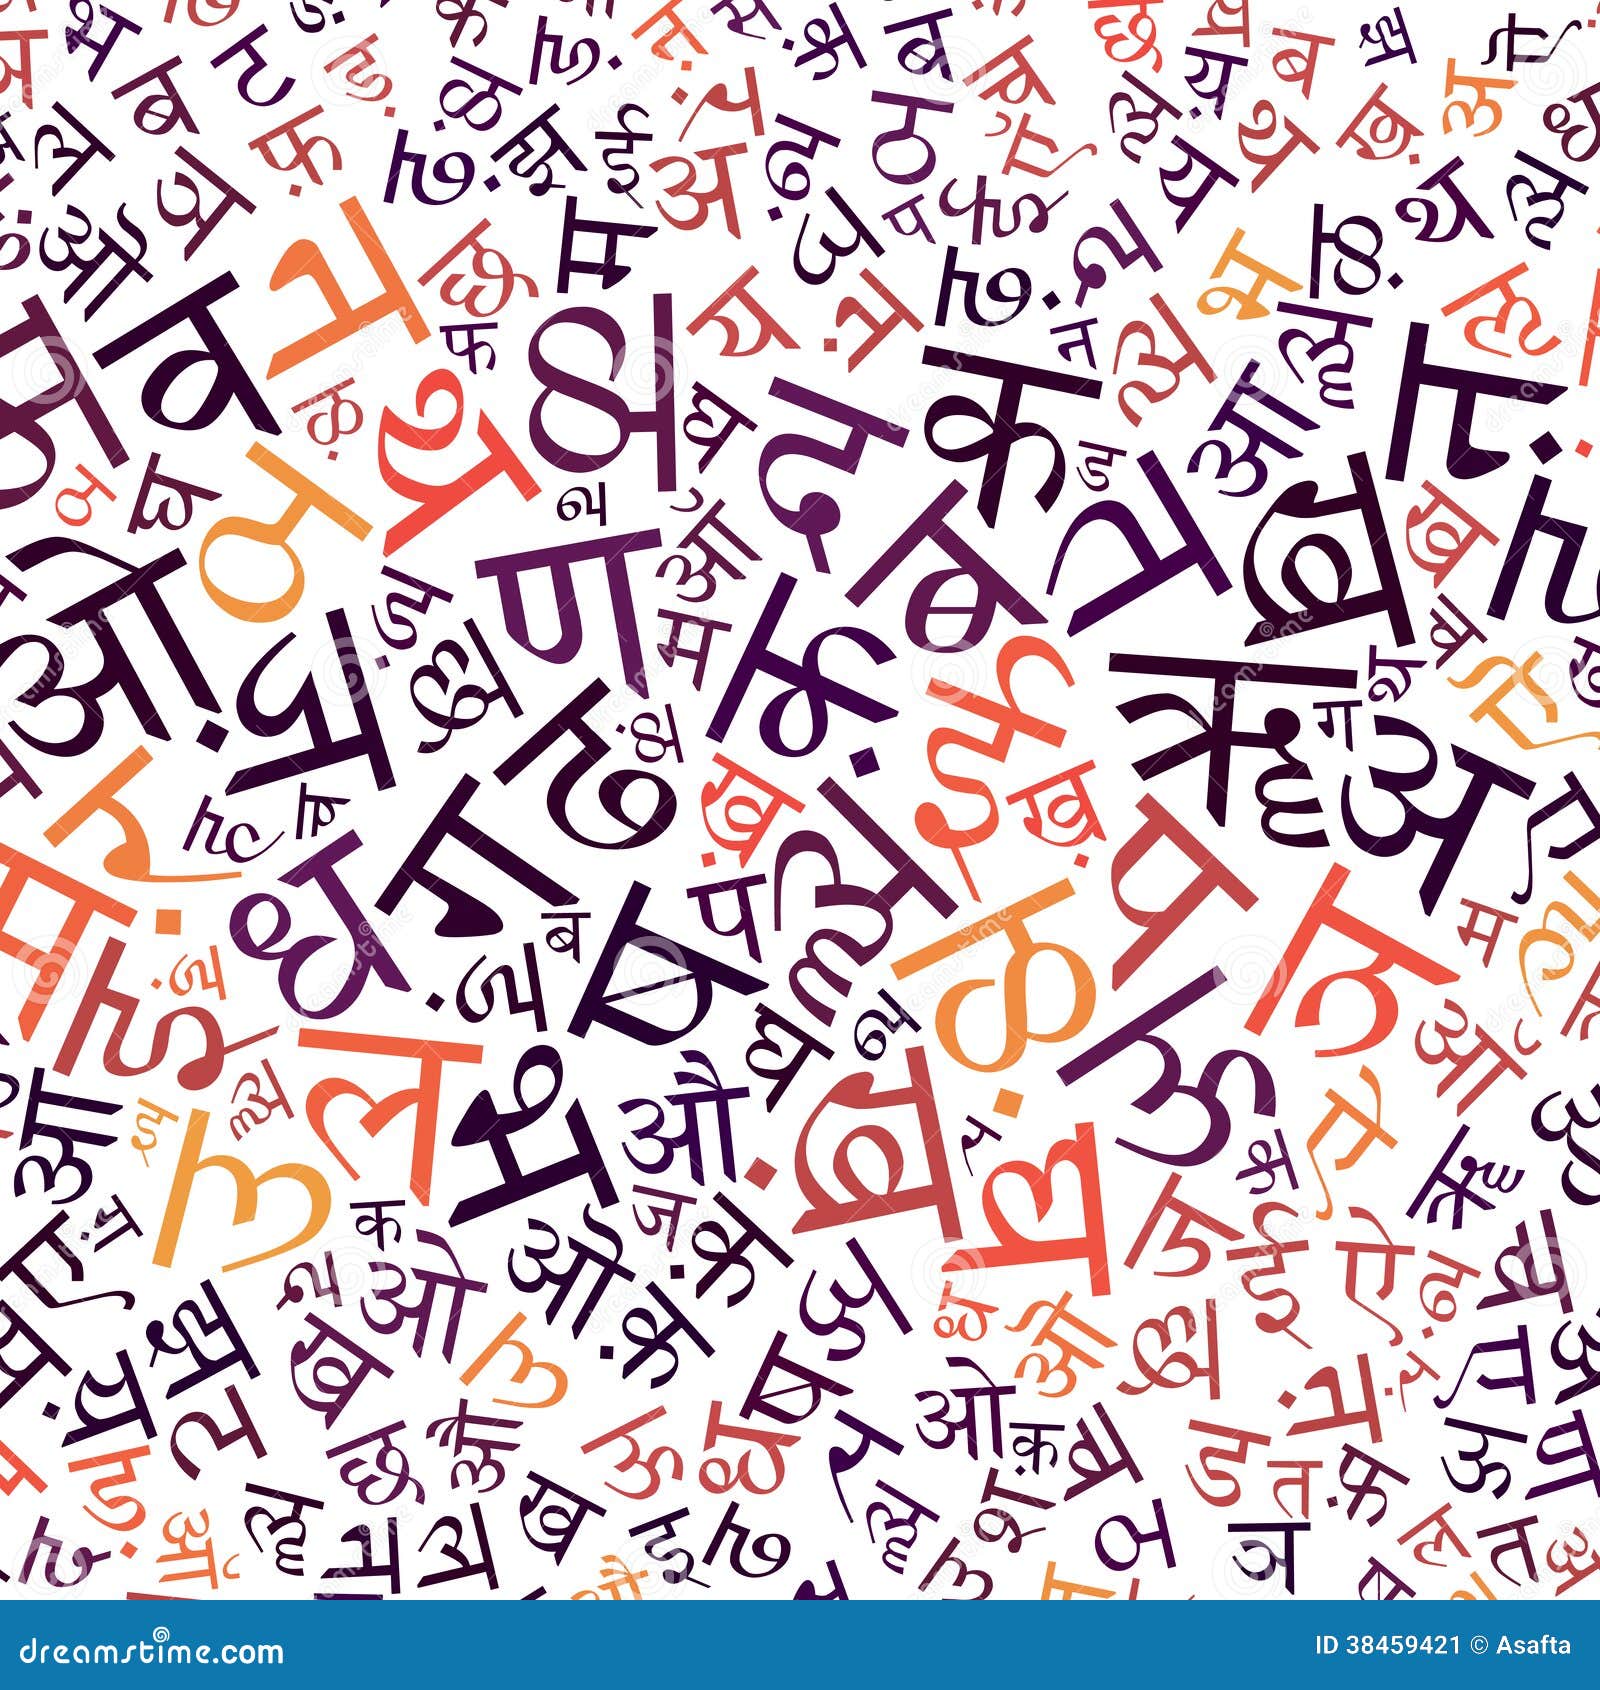 Arriba 33+ imagem background for hindi project - Thcshoanghoatham ...